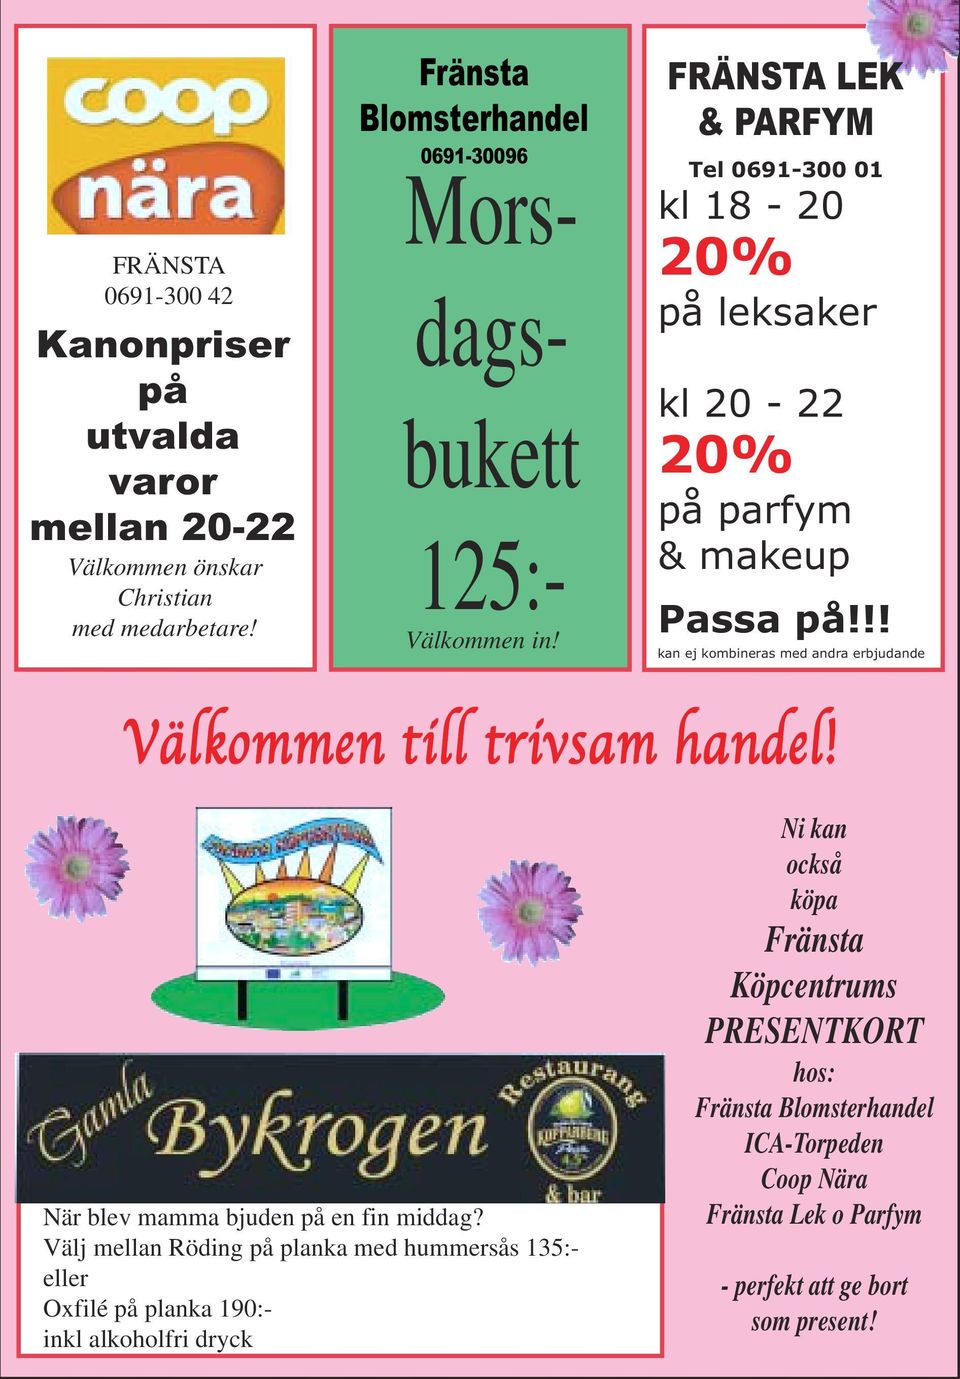 FRÄNSTA LEK & PARFYM Tel 0691-300 01 kl 18-20 20% på leksaker kl 20-22 20% på parfym & makeup Passa på!